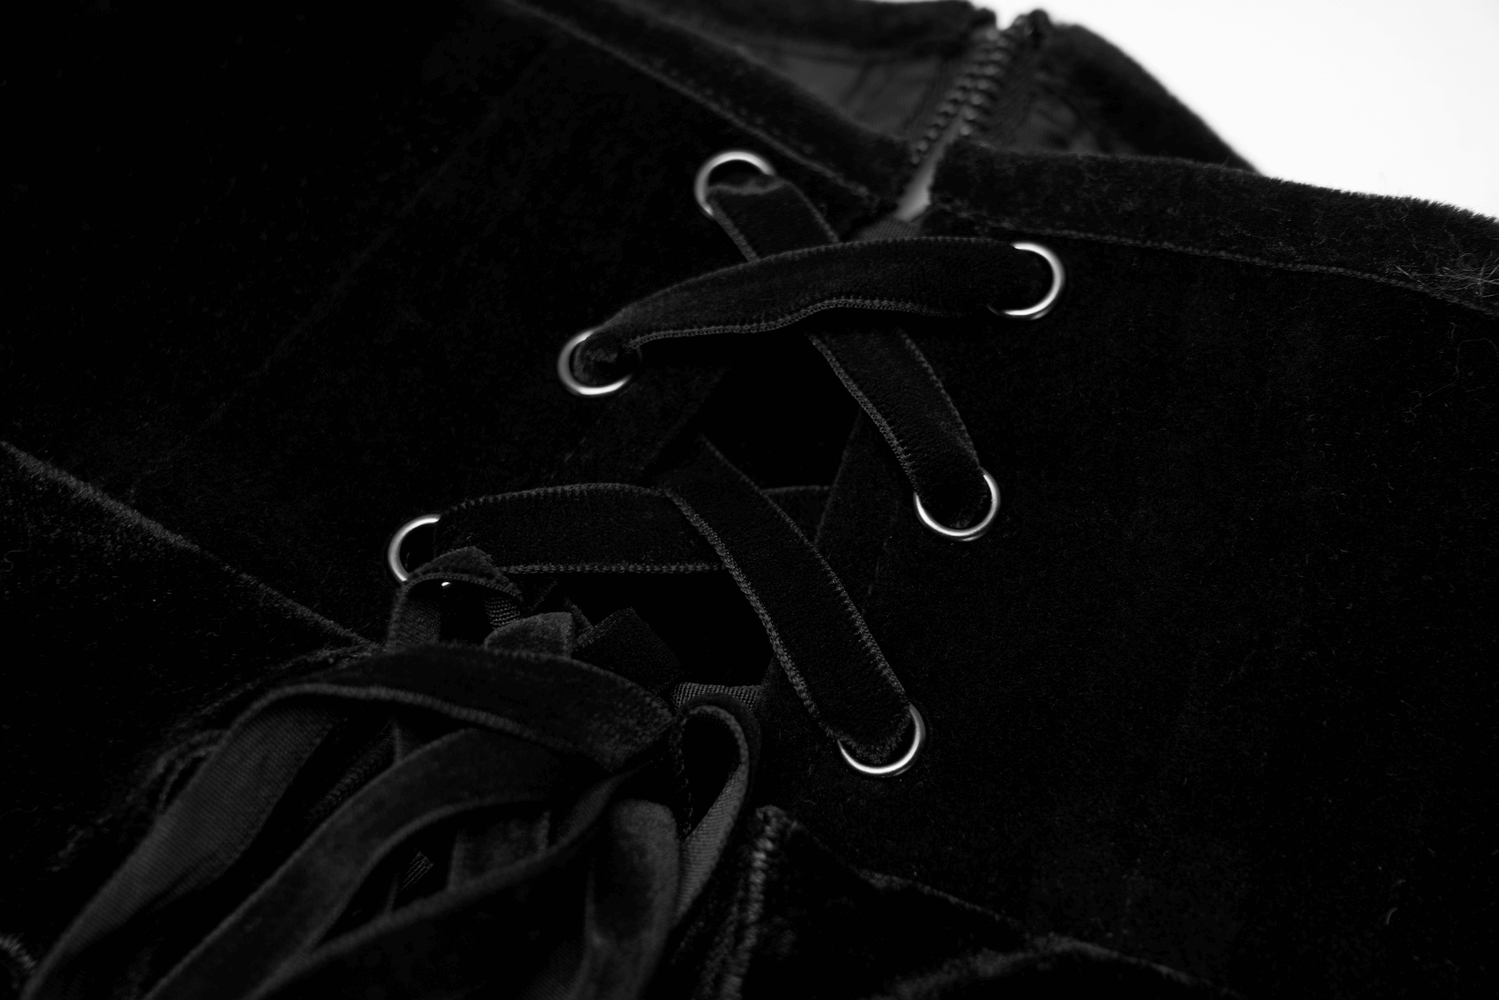 Elegant Black Velvet Gothic Vintage Corset Belt